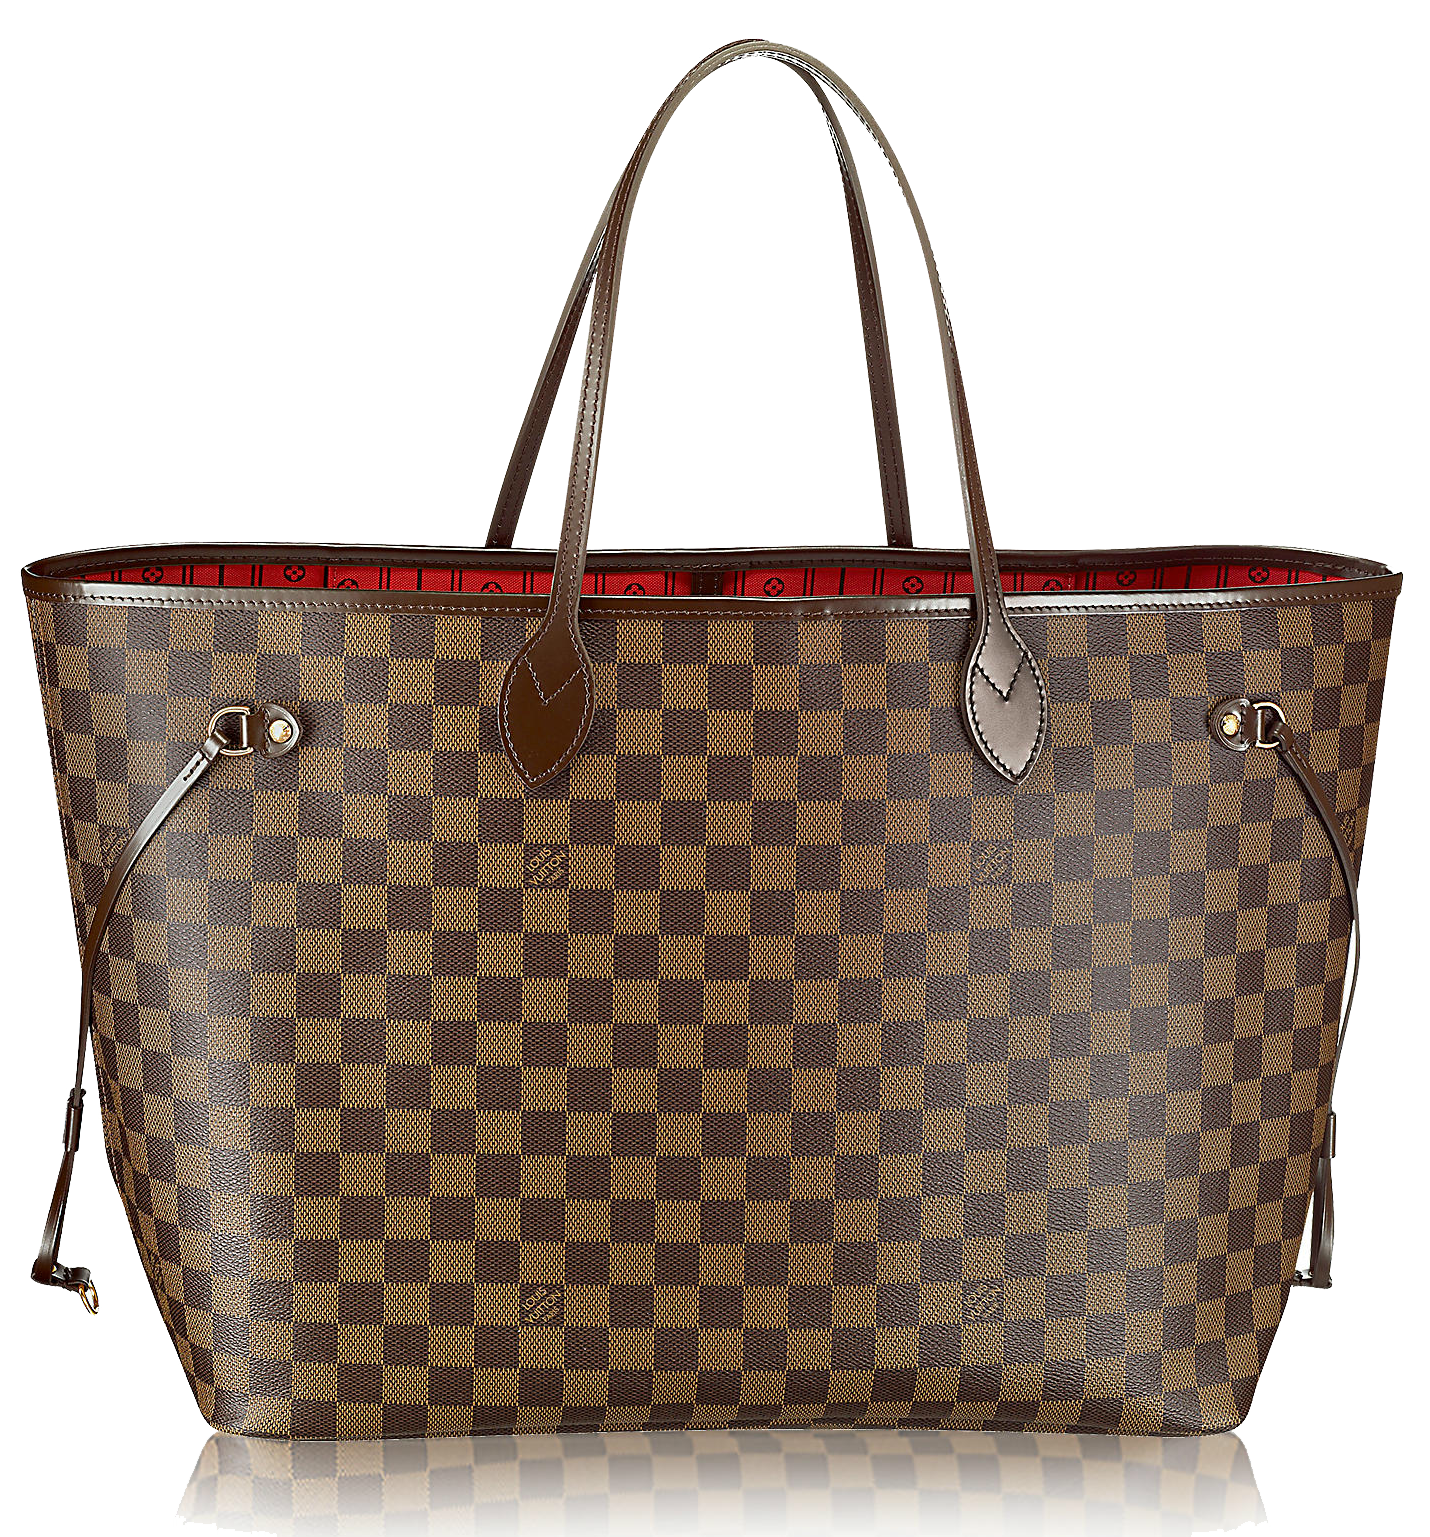 Vuitton Fashion Leather Louis Purse Handbag Transparent Clipart